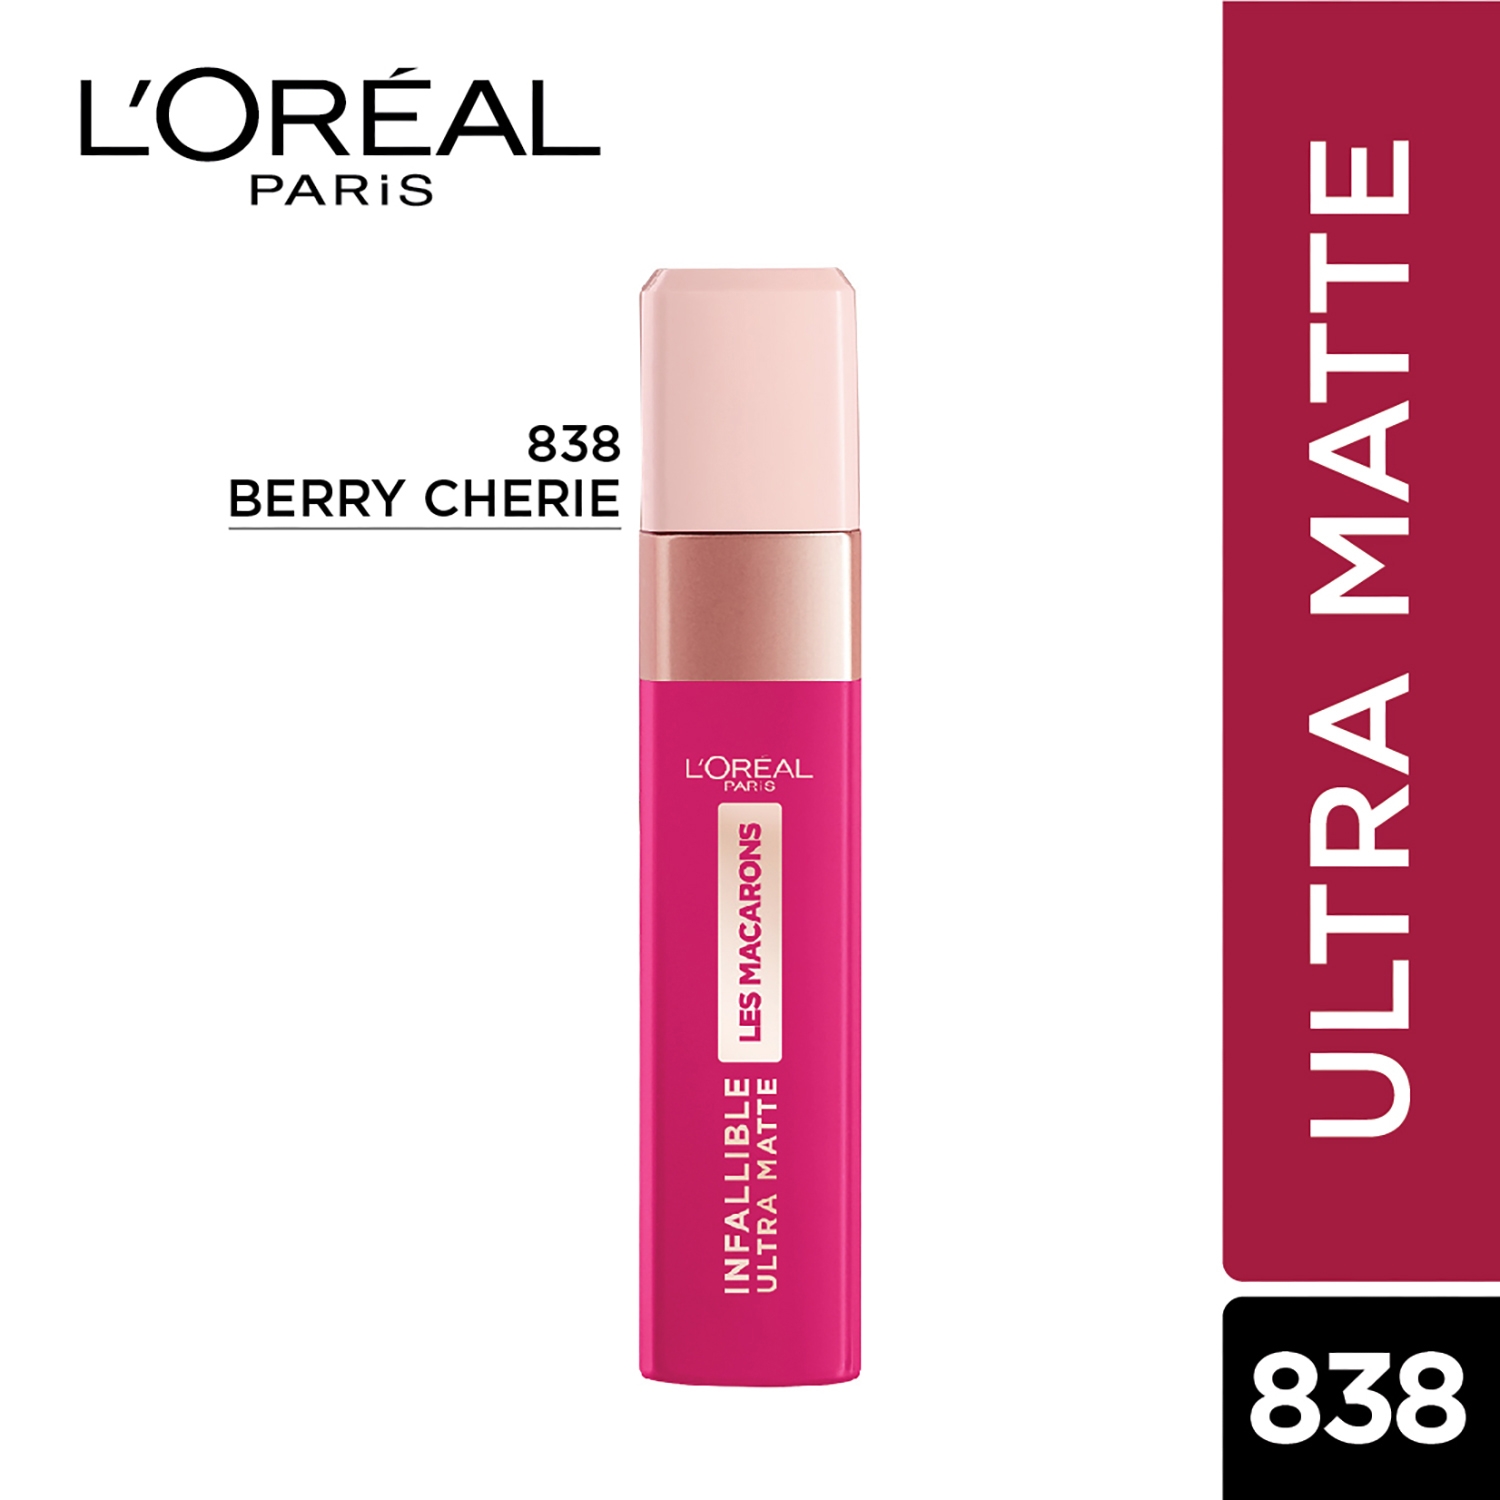 L'Oreal Paris | L'Oreal Paris Infallible Ultra Matte Liquid Lipstick, Les Macarons, 838 Berry Cherie, 5g